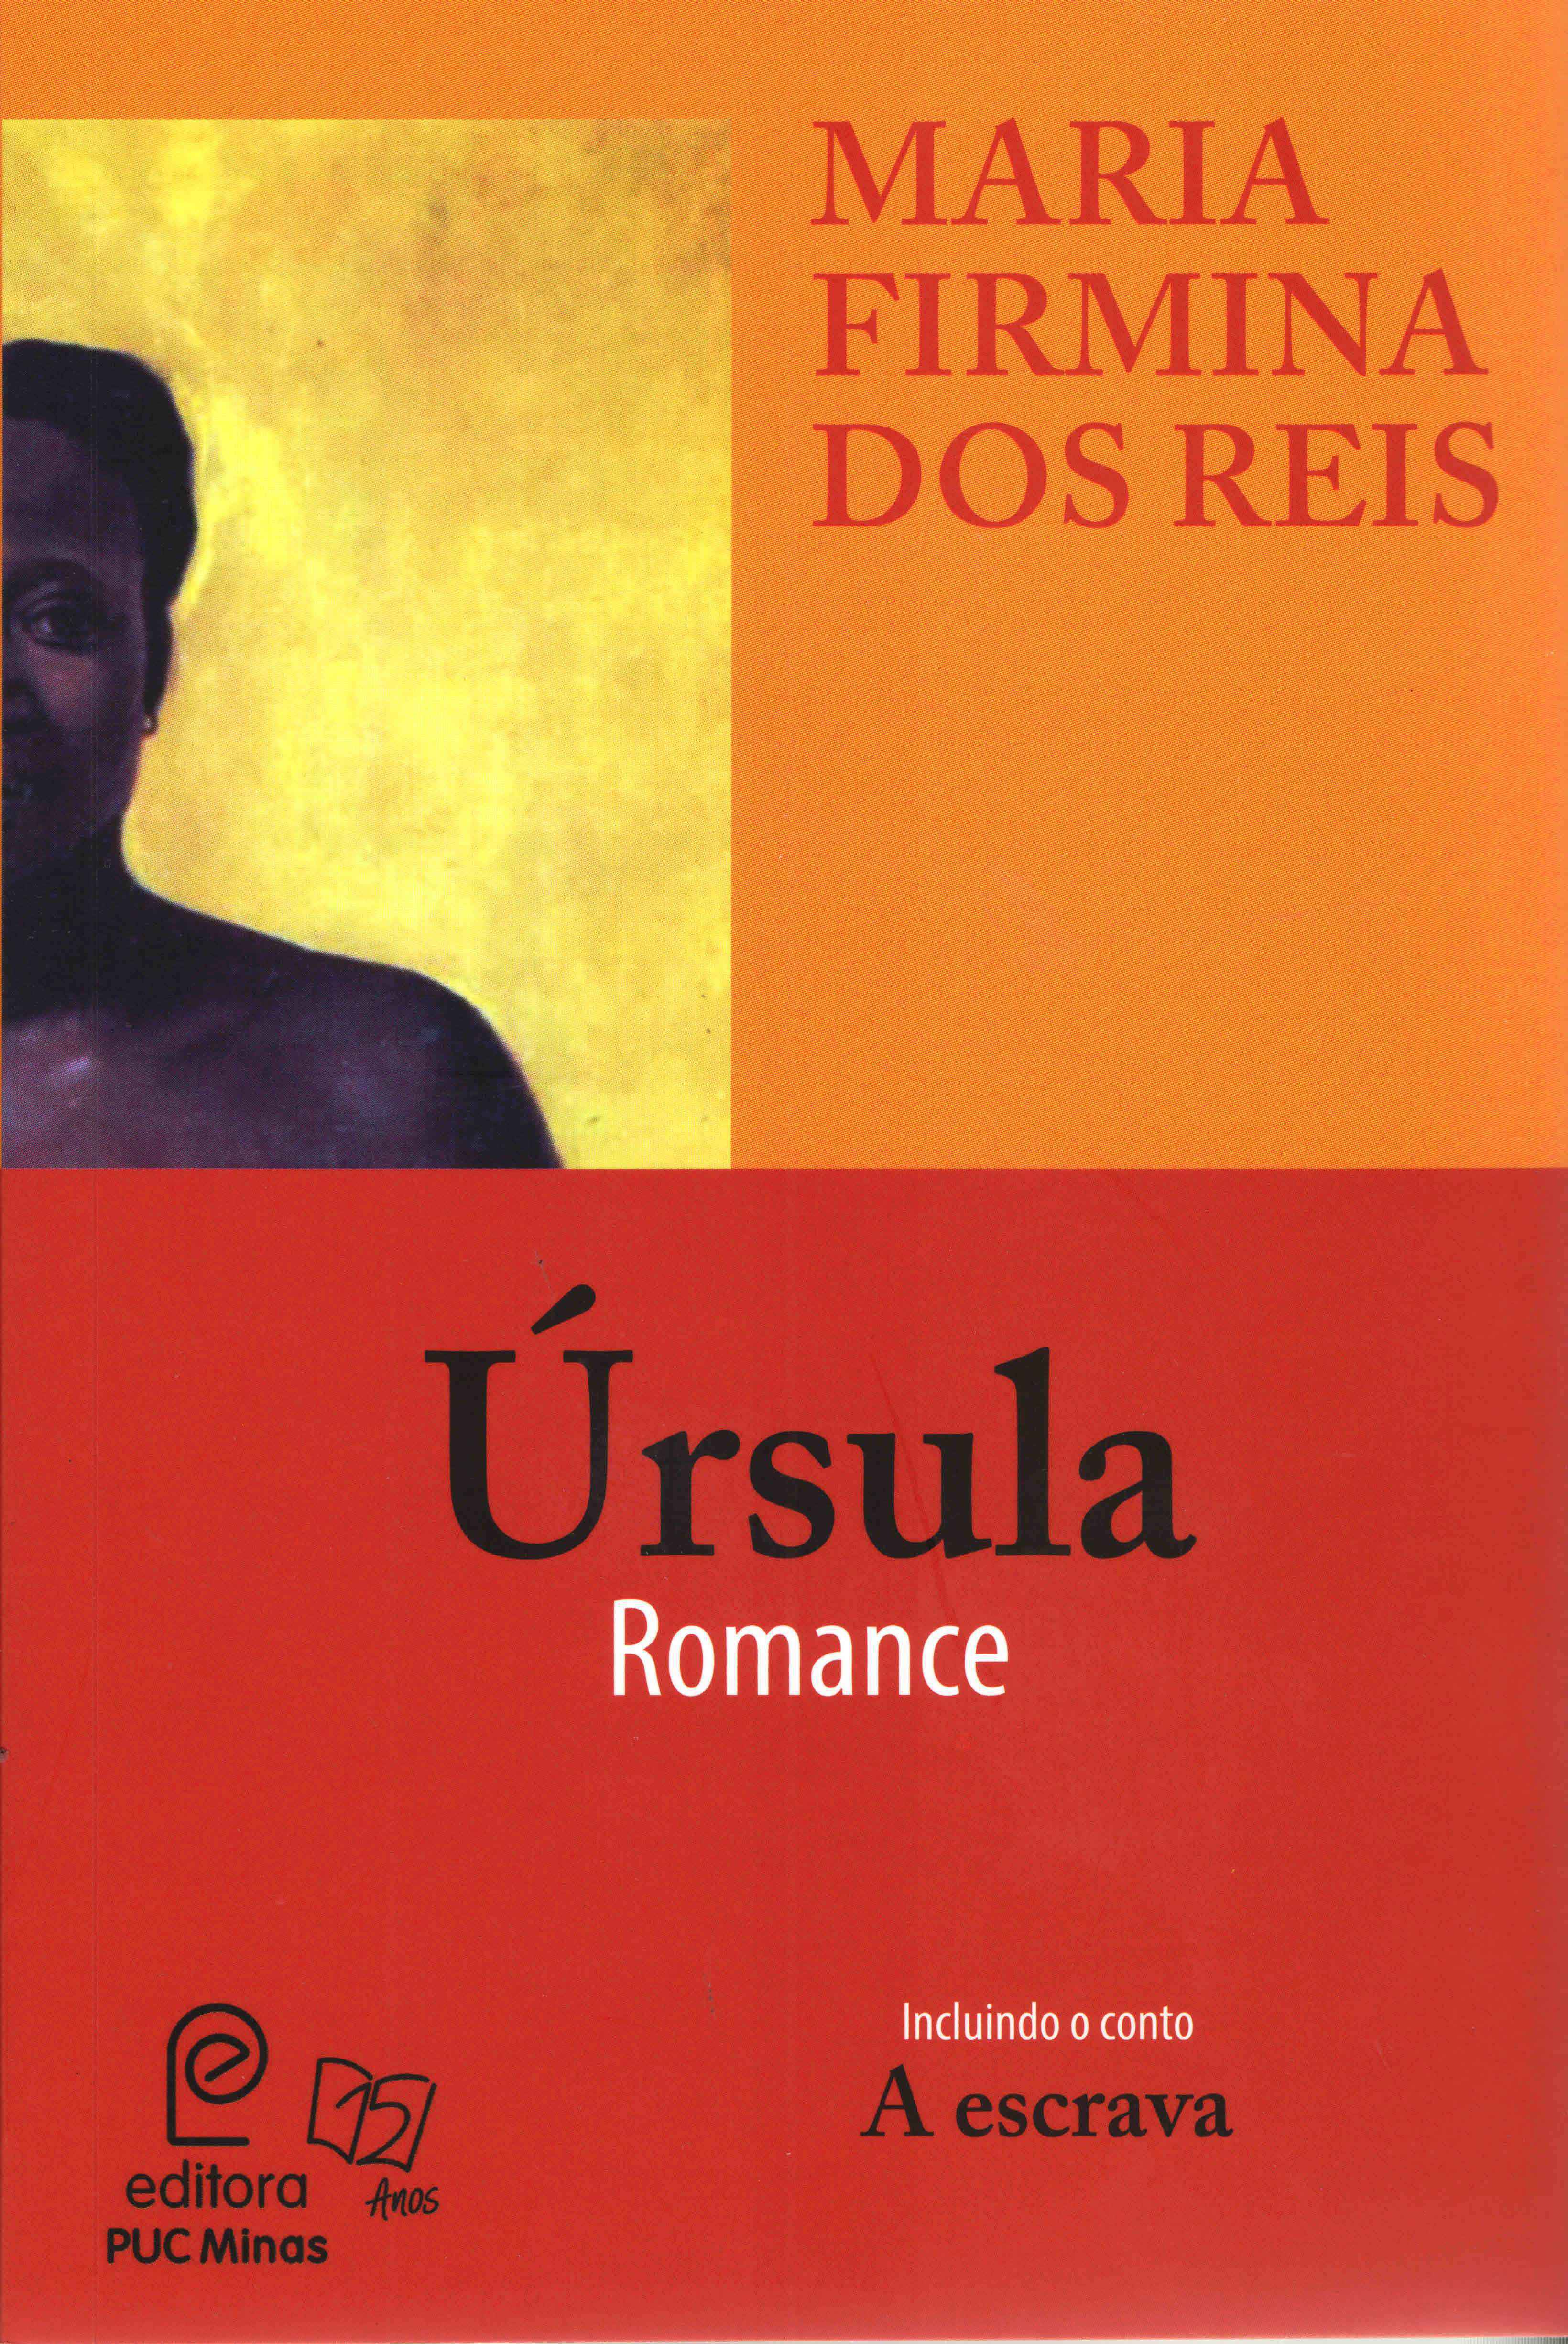 Úrsula, primeira publicação da autora, também é considerado o primeiro livro da literatura afro-brasileira